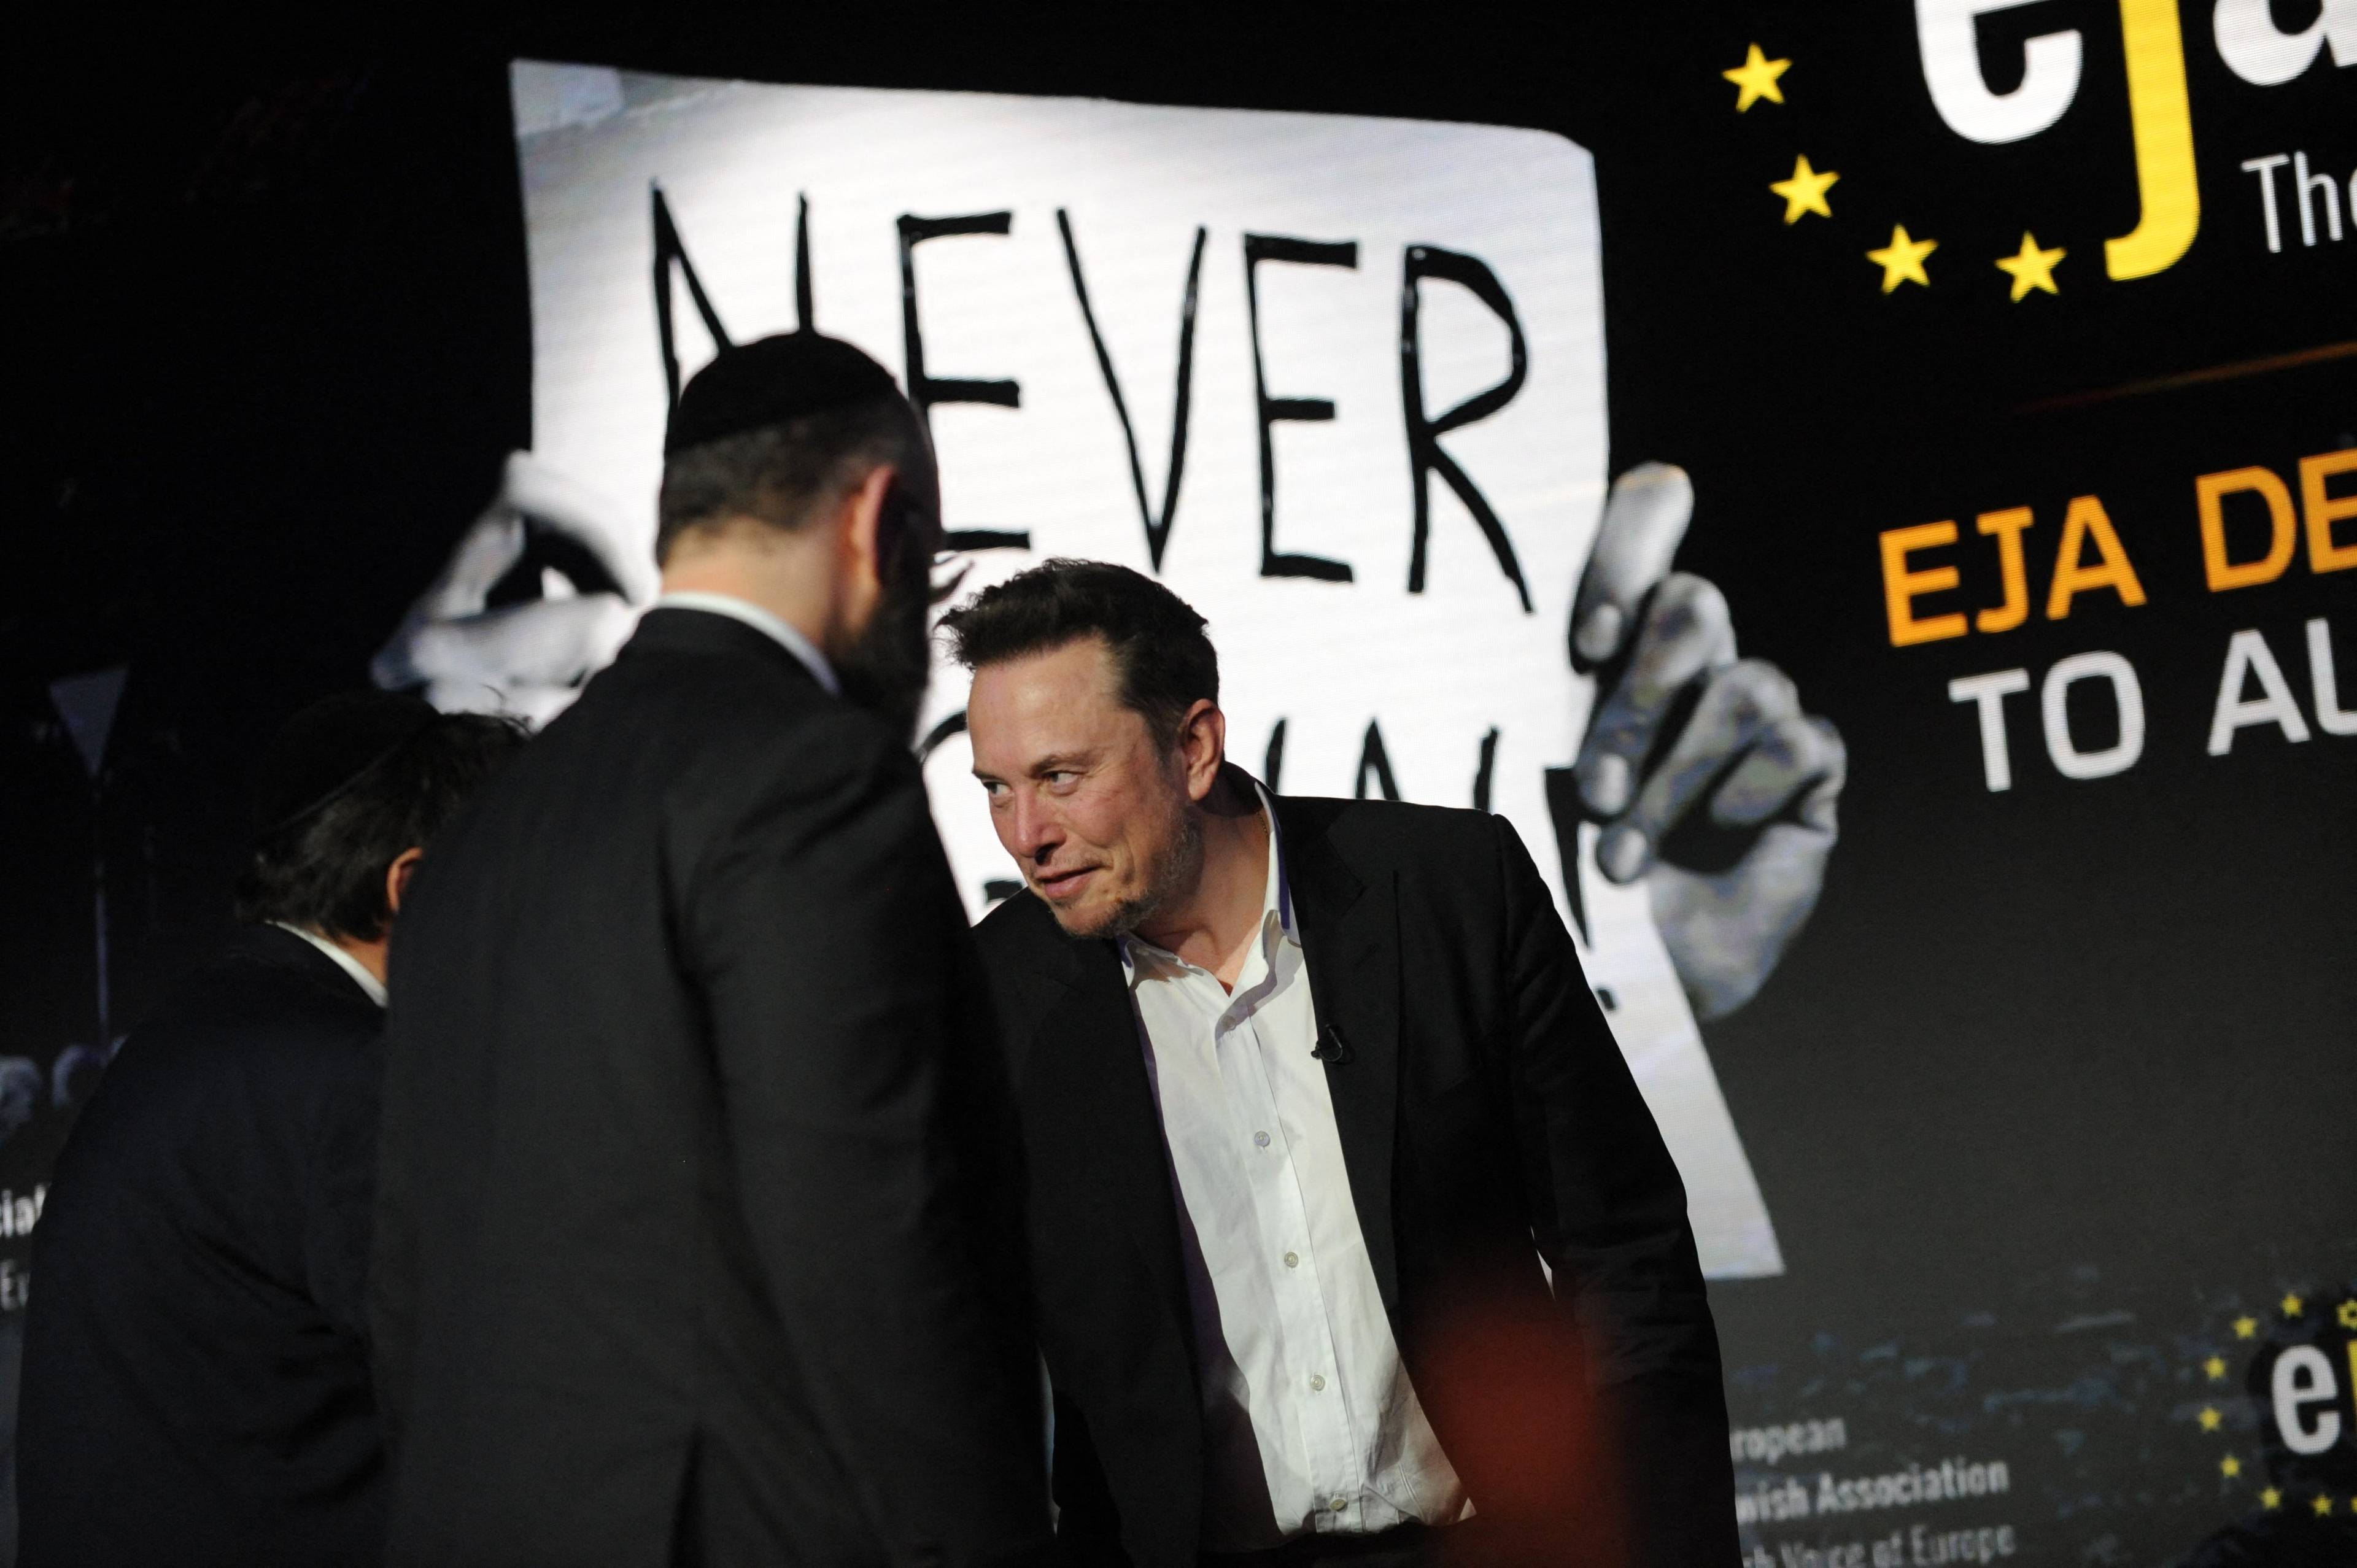 CEO X (dawniej Twitter) Elon Musk uczestniczy w sympozjum na temat "Antysemityzmu w sieci"